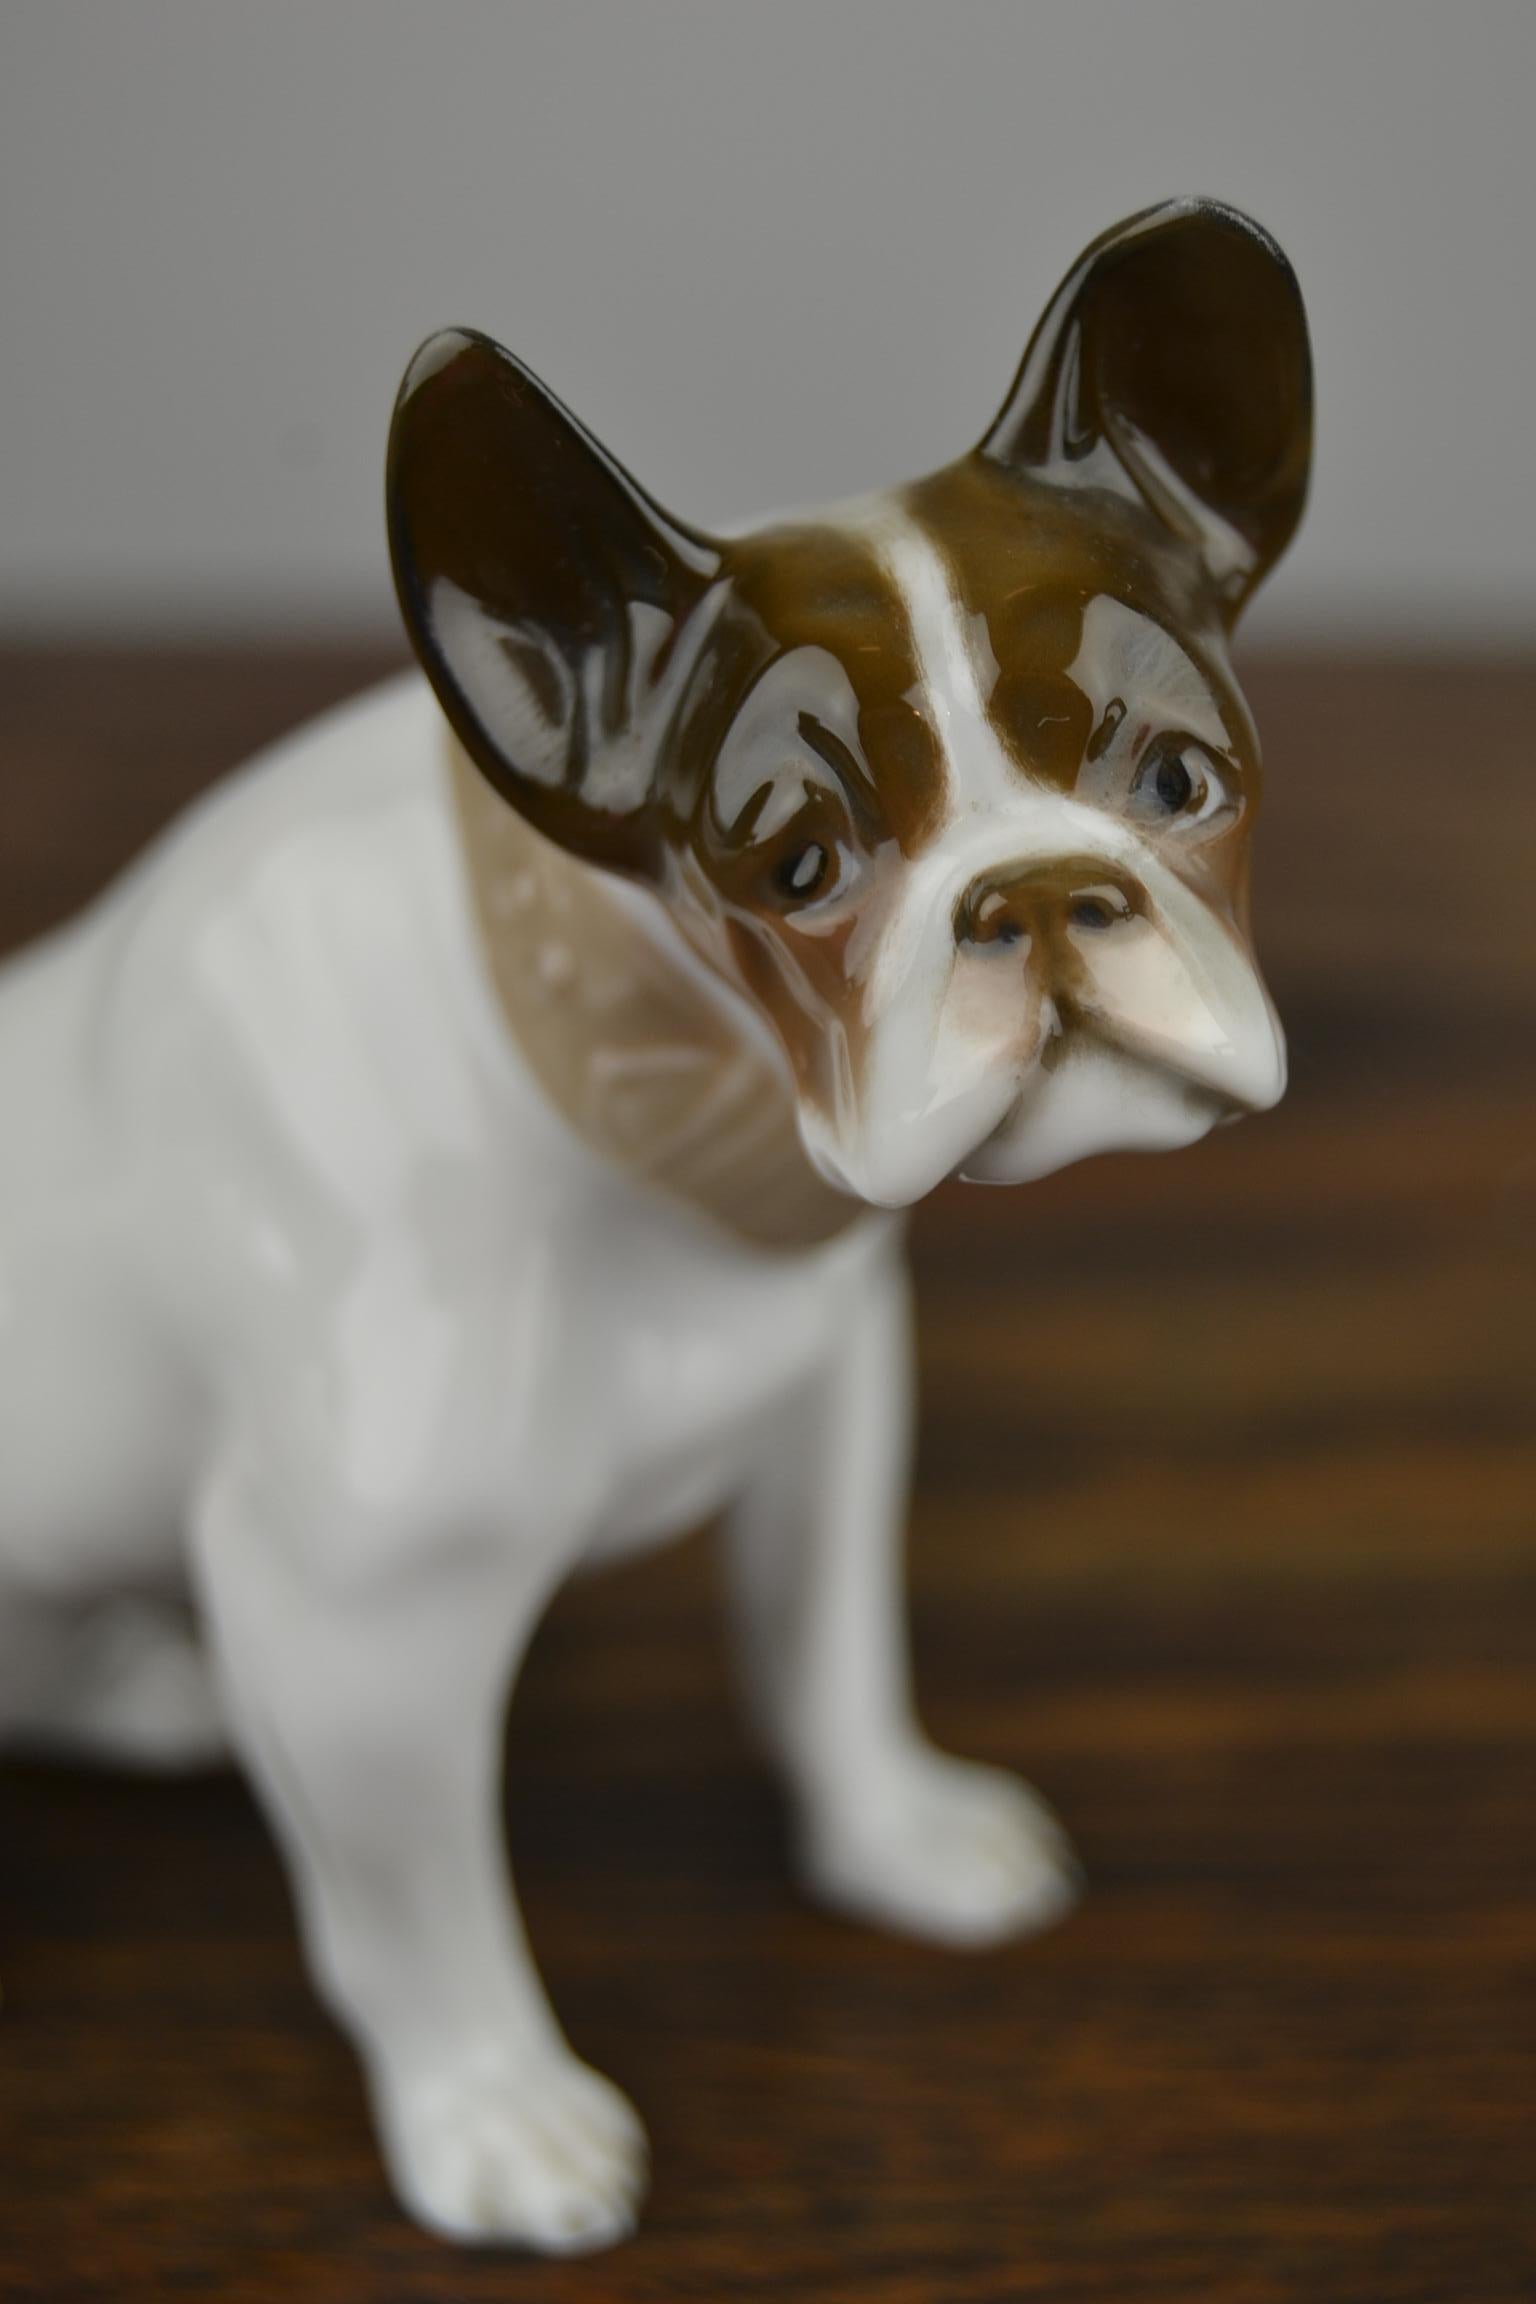 Französische Bulldogge aus Porzellan im Art déco-Stil aus den 1920er Jahren.
Diese Tierstatue - Hundestatue wurde von Rosenthal Selb Bayern, Deutschland hergestellt.
Erste Qualität von Porzellan mit Farben weiß und verschiedene Schattierungen von